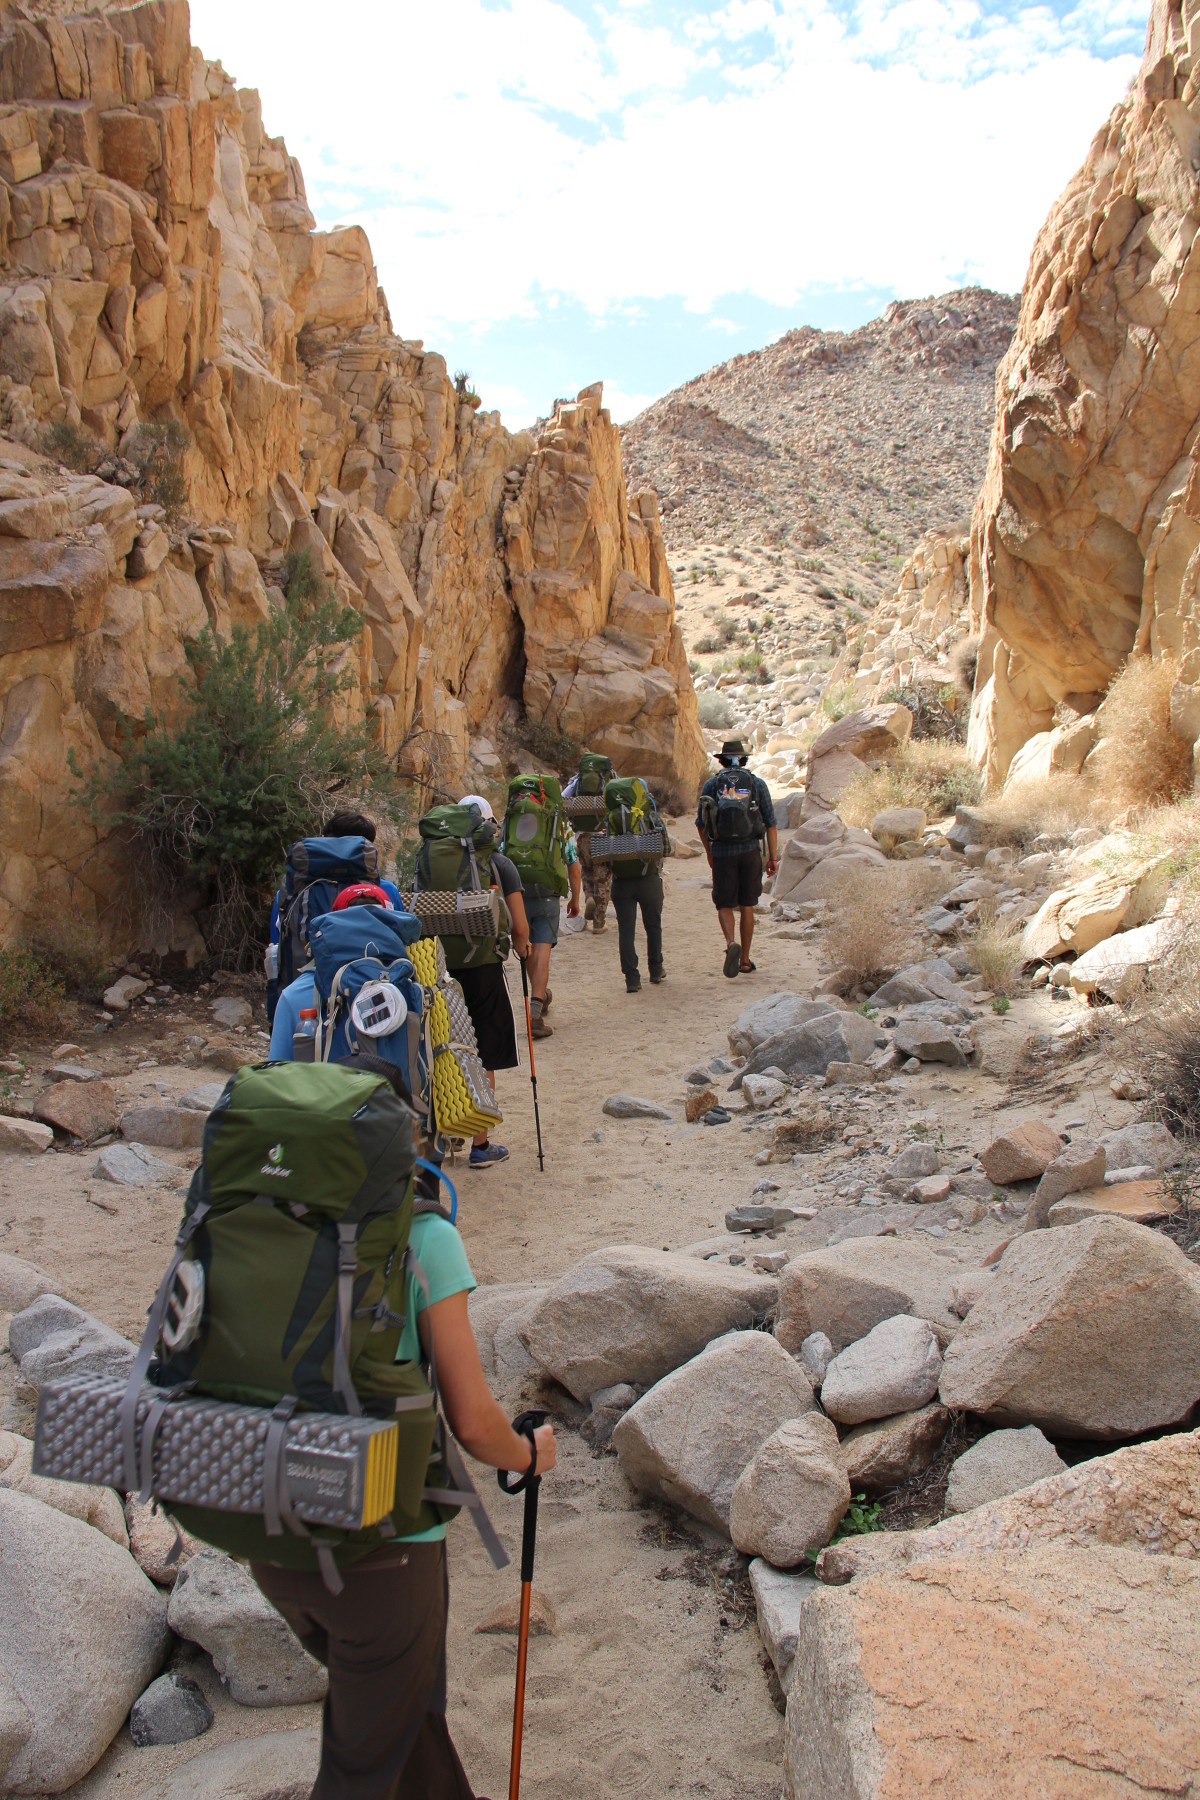 Backpacking in the desert